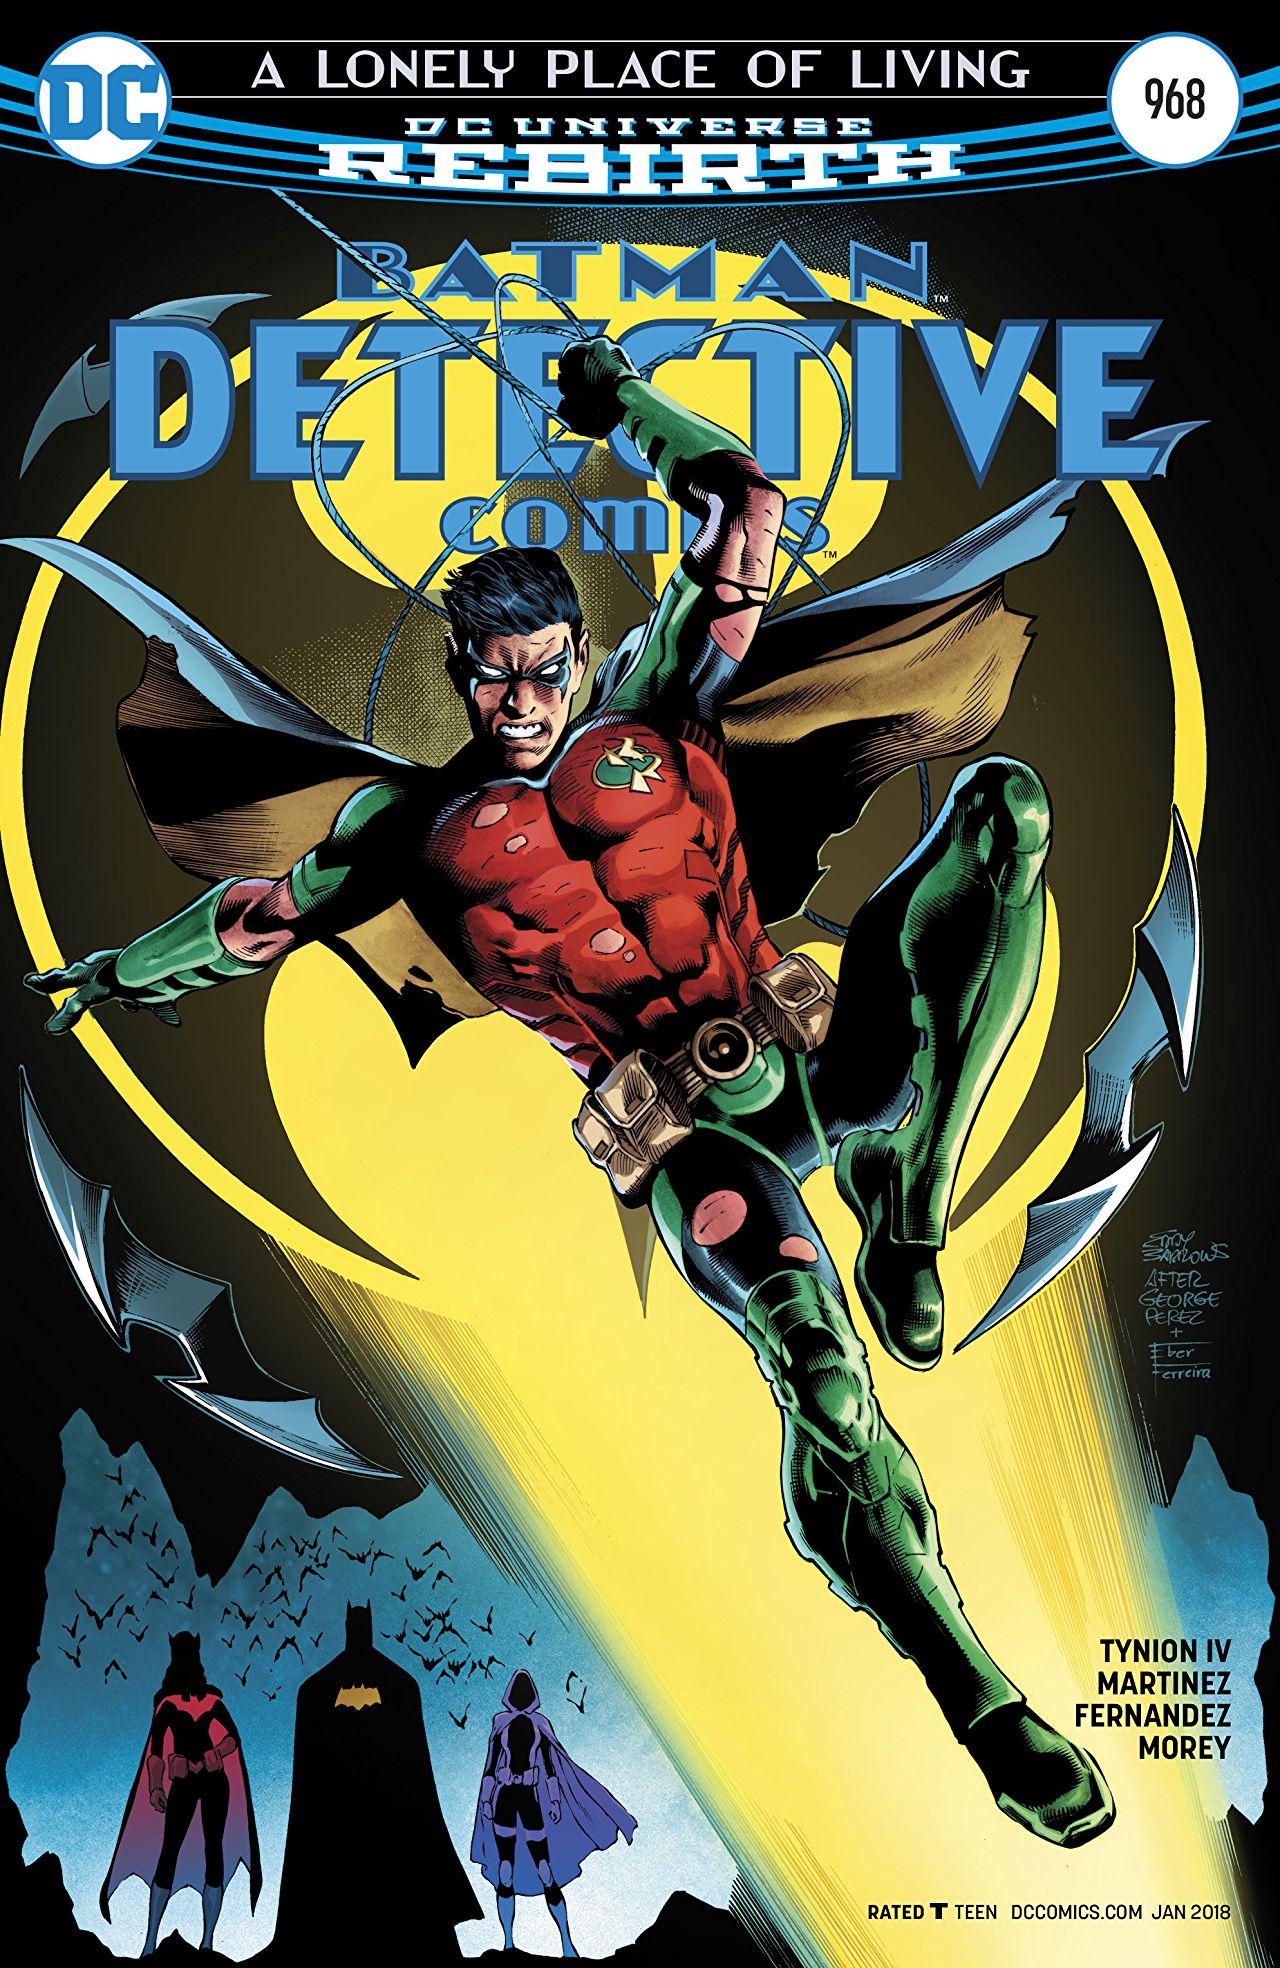 Detective Comics Vol. 1 #968